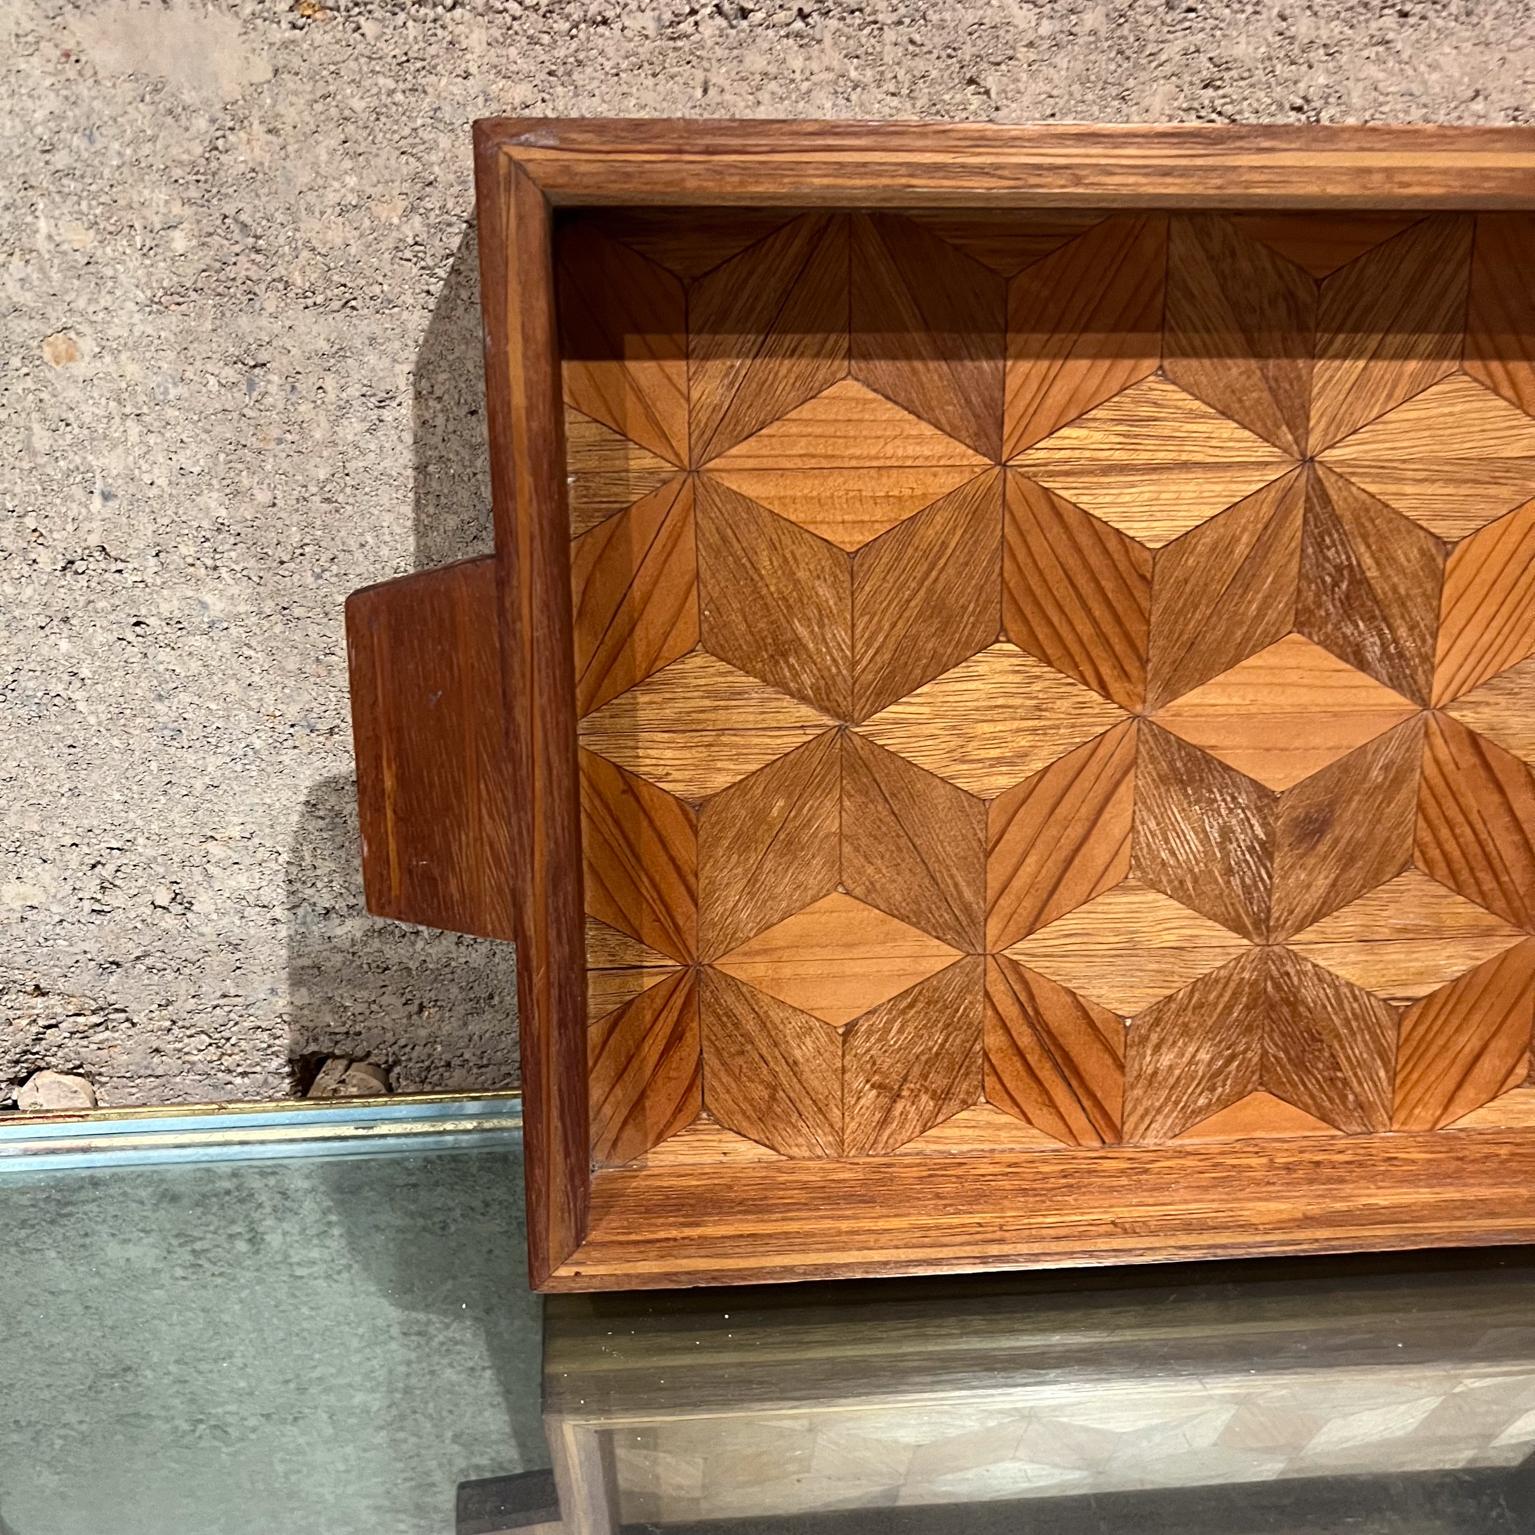 
1960s Midcentury Modern Wood Serving Tray Geometric Design
Dans le style de Don Shoemaker
9,75 p x 16,5 long x 1,5
Etat original d'occasion.
Voir toutes les images.